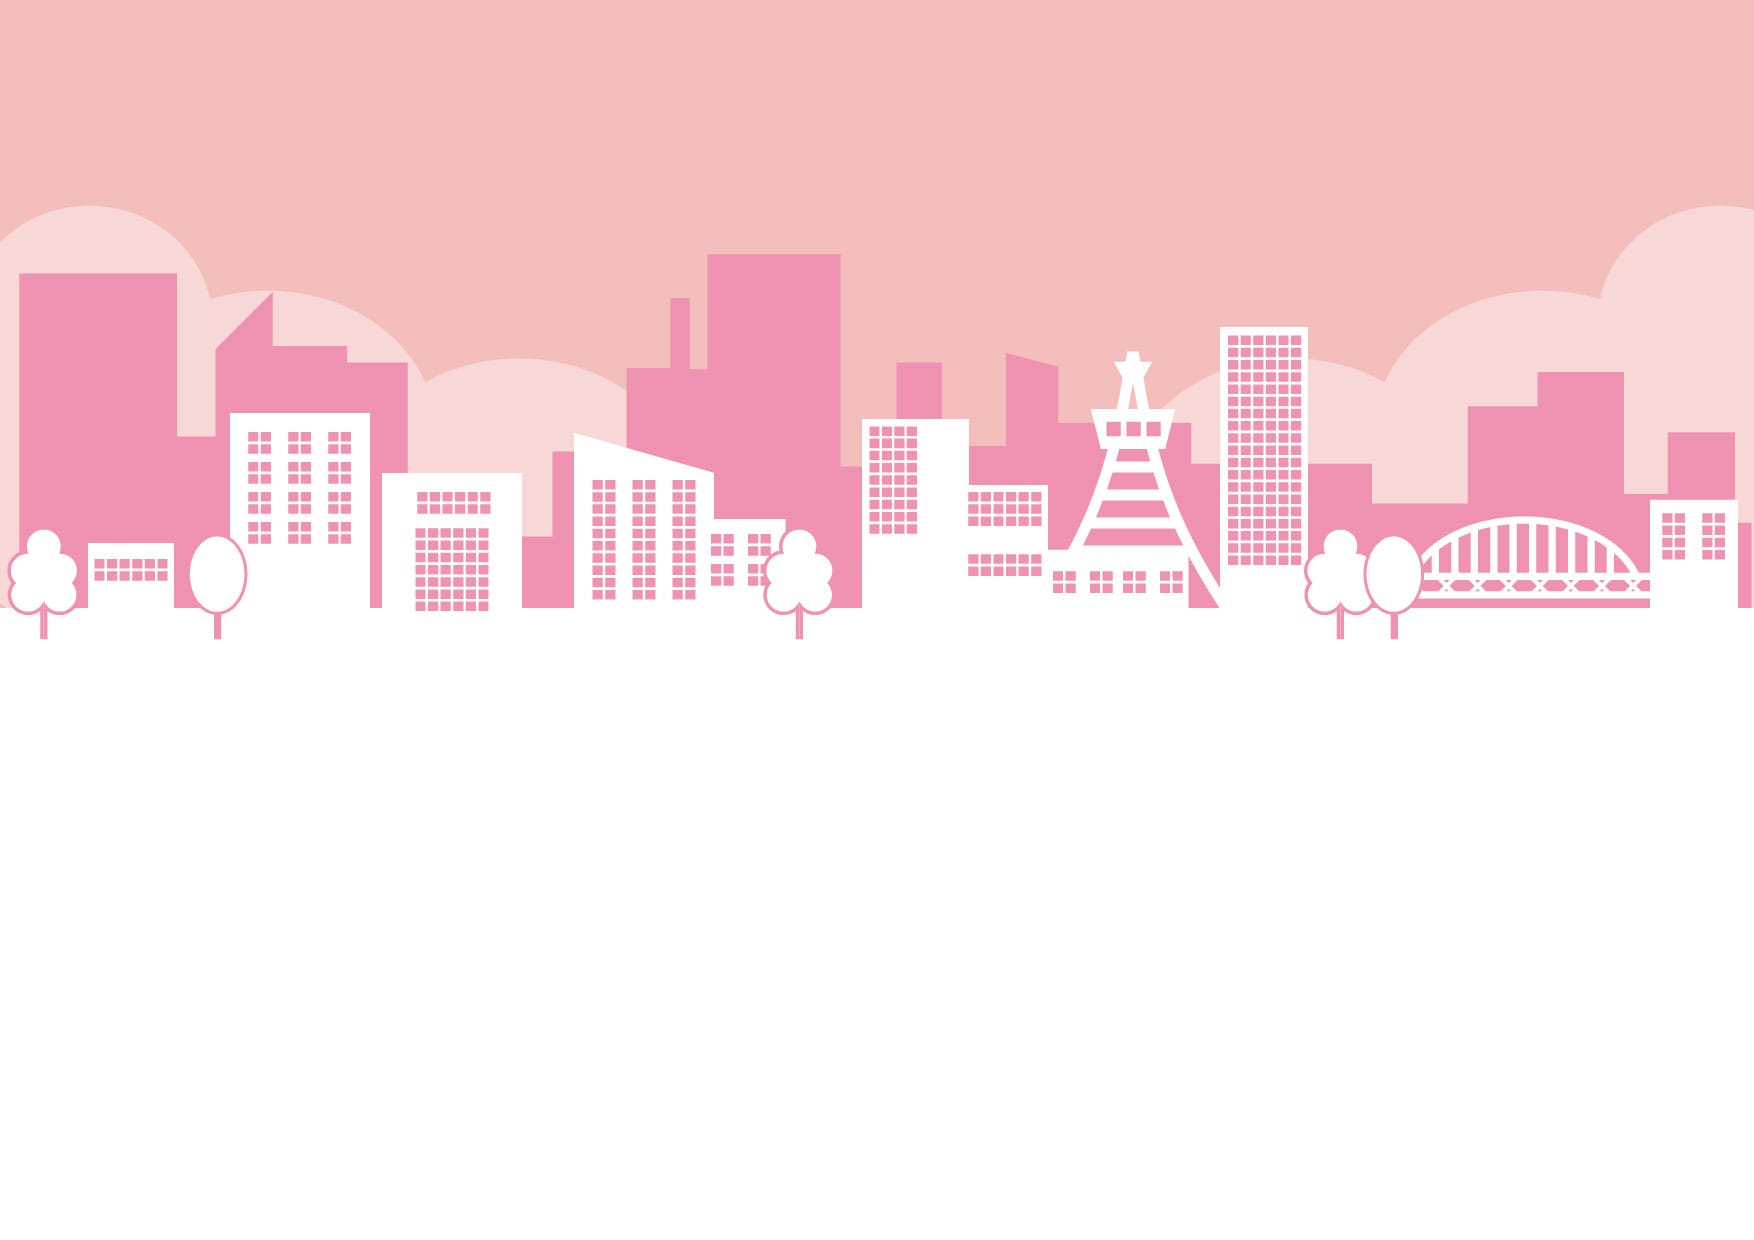 可愛いイラスト無料 街並み ピンク色 Free Illustration Cityscape Pink 公式 イラスト素材サイト イラスト ダウンロード